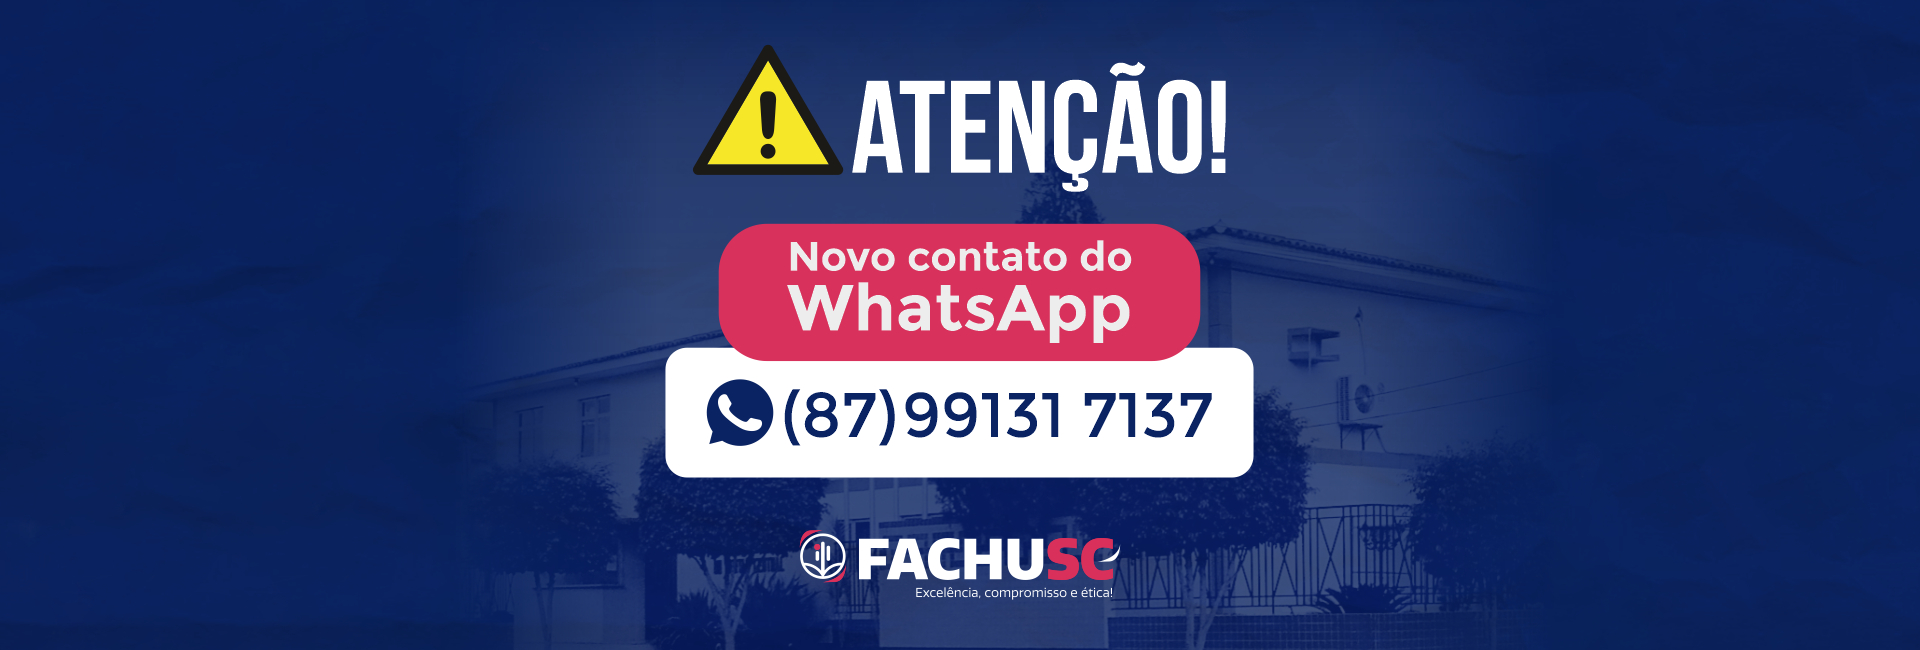 Novo WhatsApp da FACHUSC.